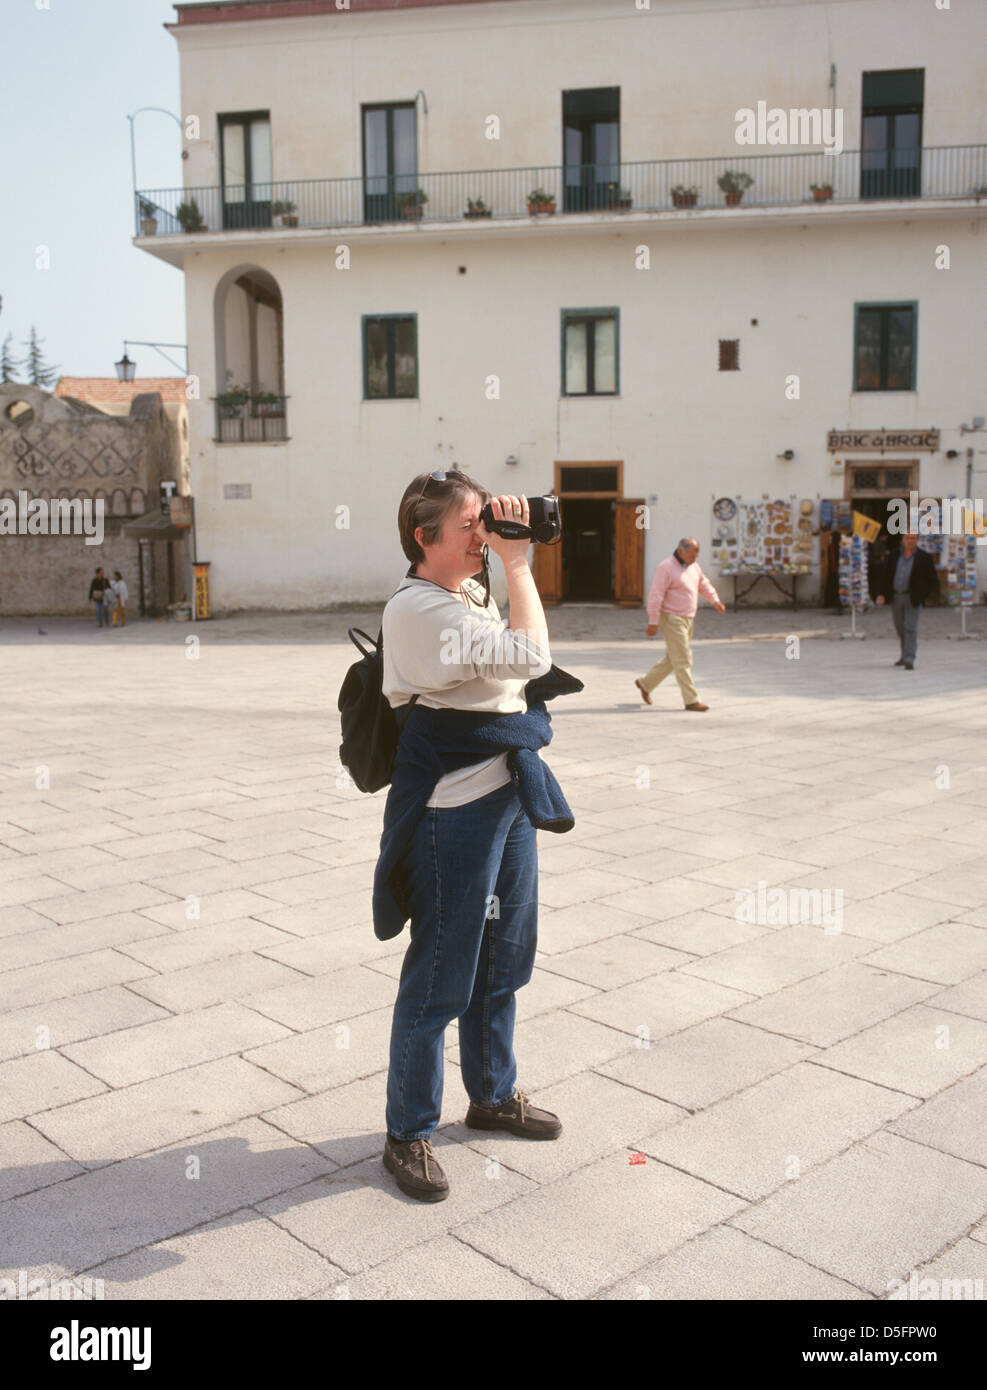 Italia Campania Costiera Amalfitana Ravello Piazza Duomo Tourist con videocamera Foto Stock